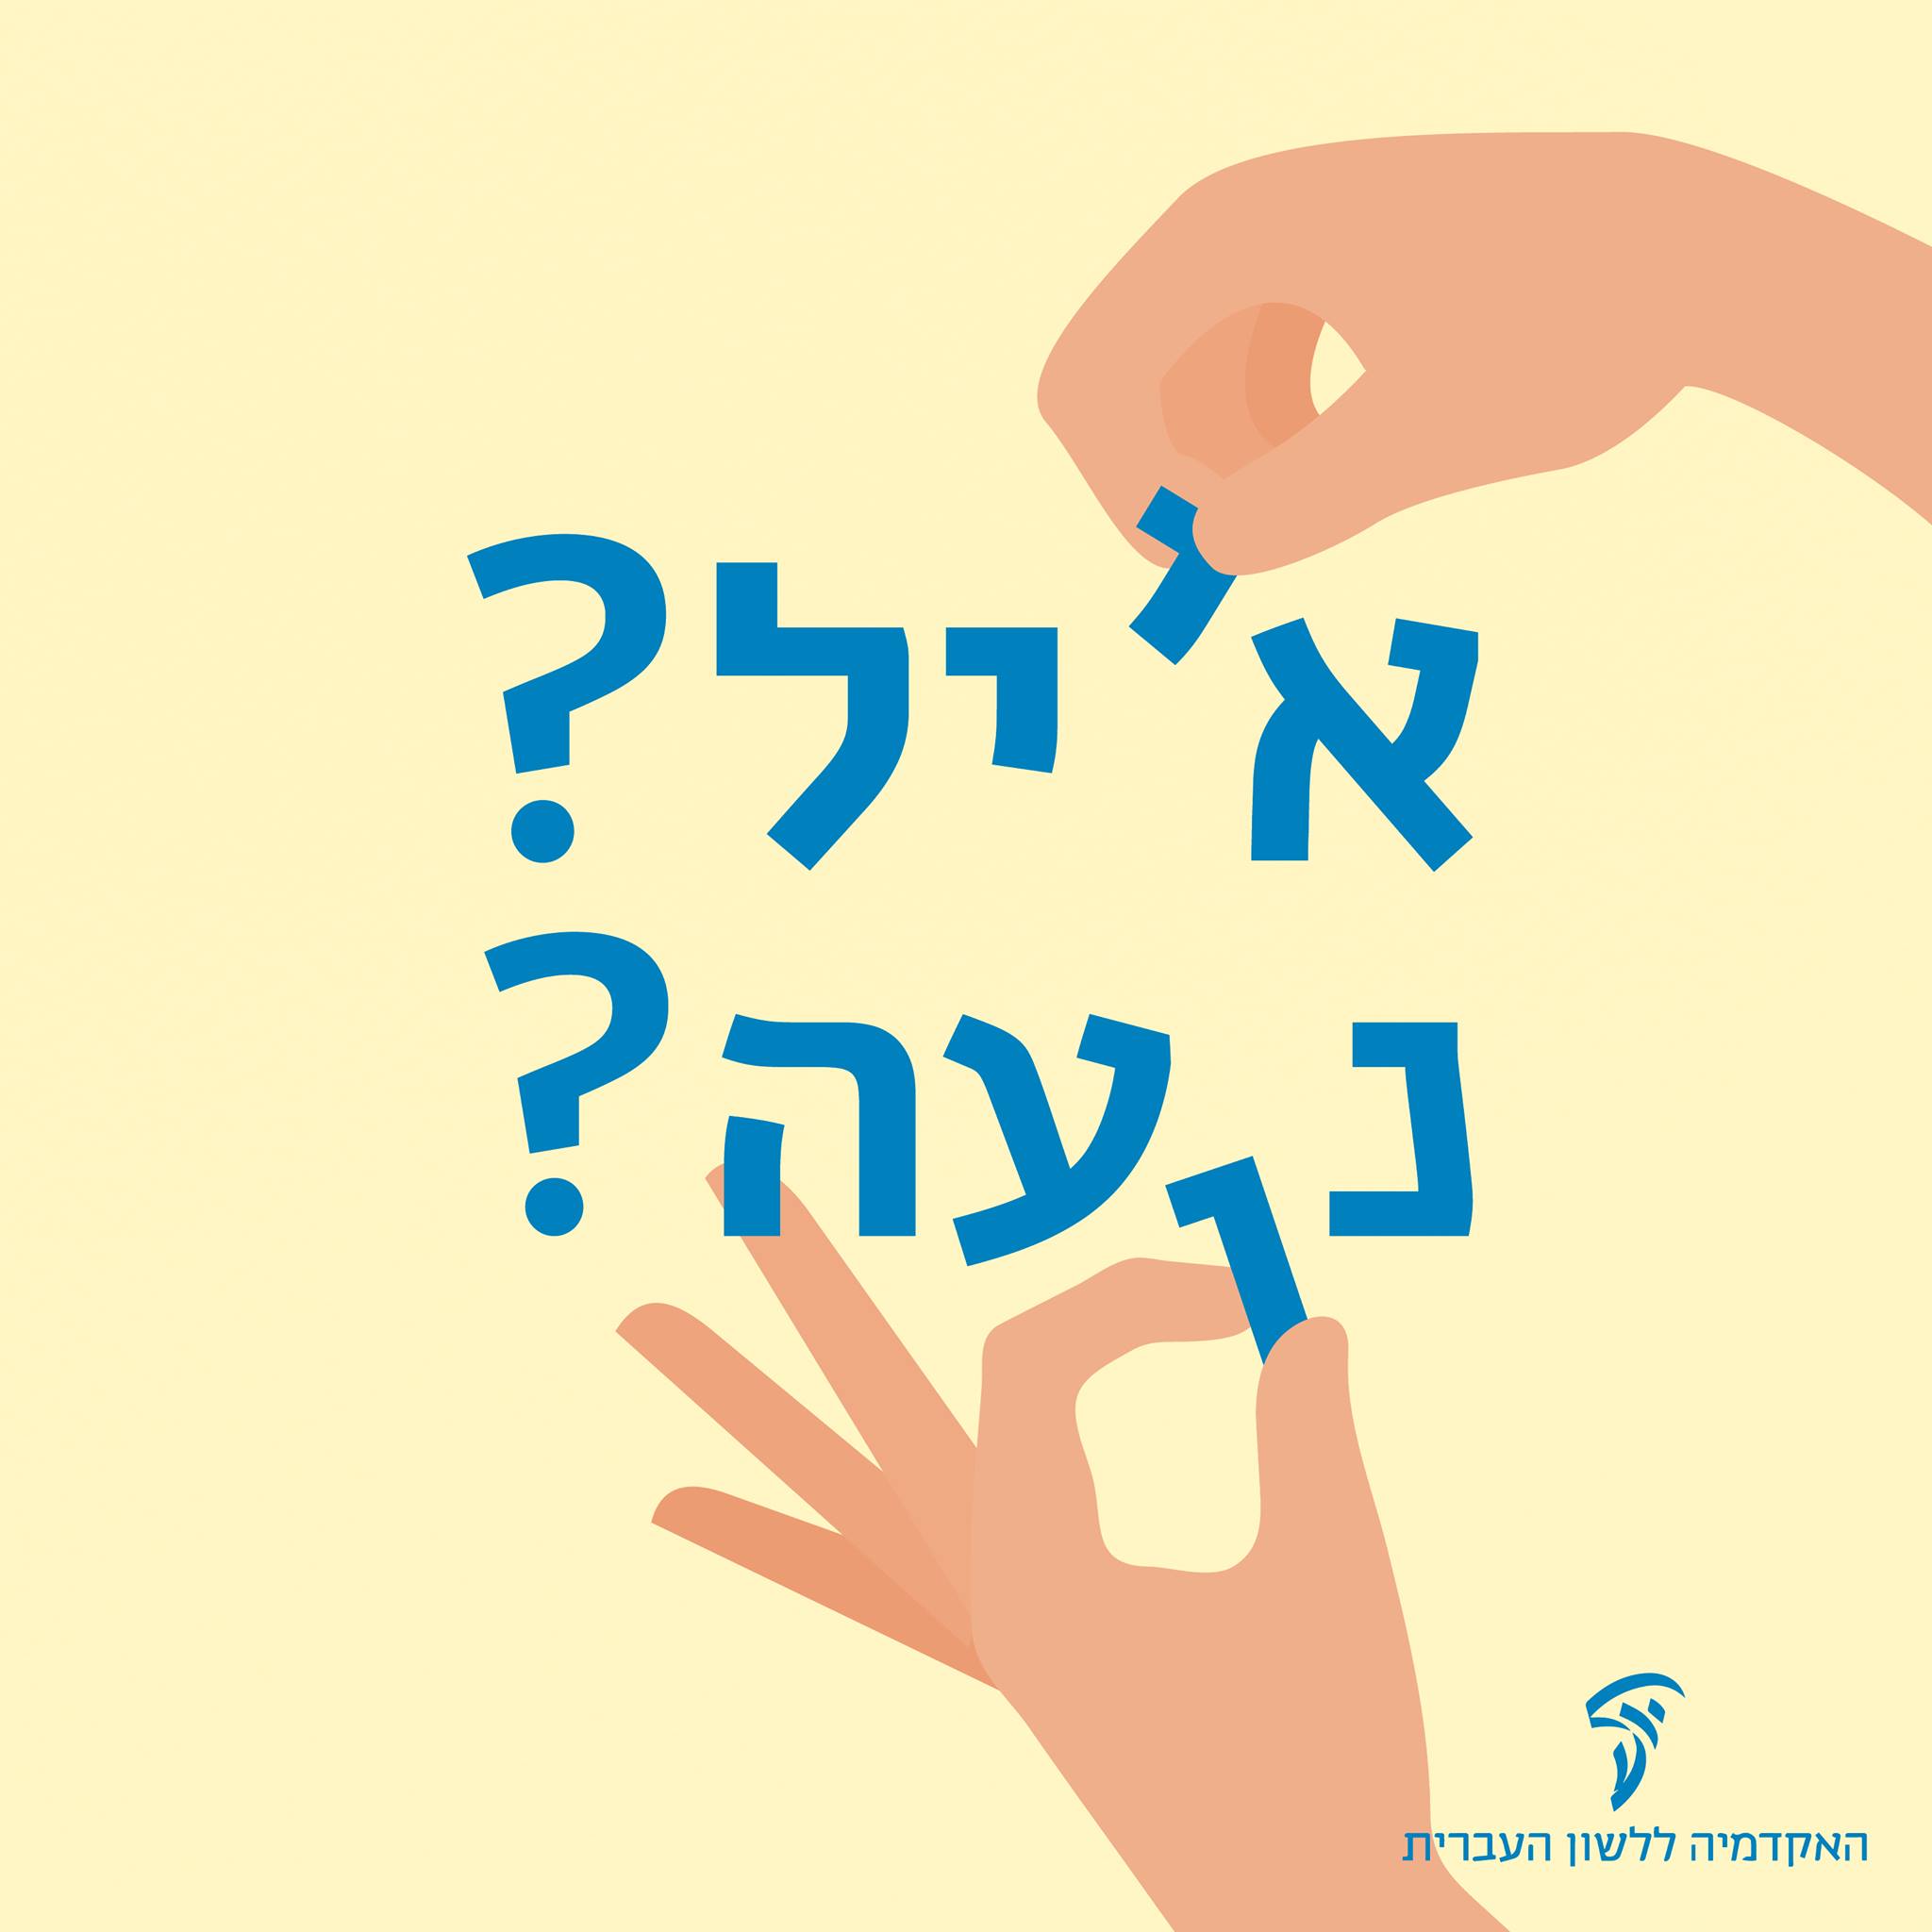 Héber személynevek – Teljes vagy pontozatlan írásmód?